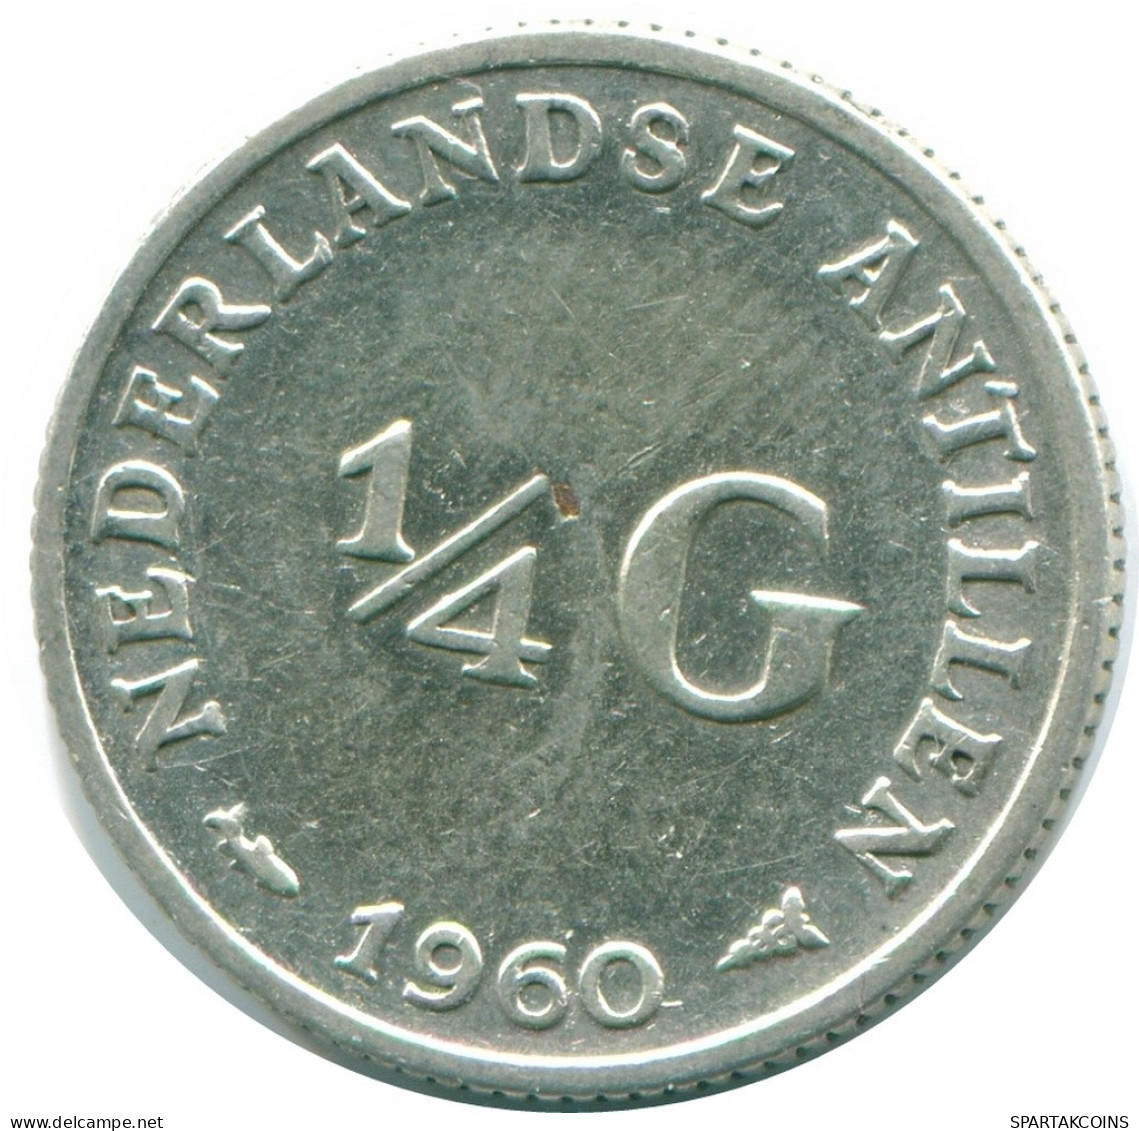 1/4 GULDEN 1960 NIEDERLÄNDISCHE ANTILLEN SILBER Koloniale Münze #NL11038.4.D.A - Antilles Néerlandaises